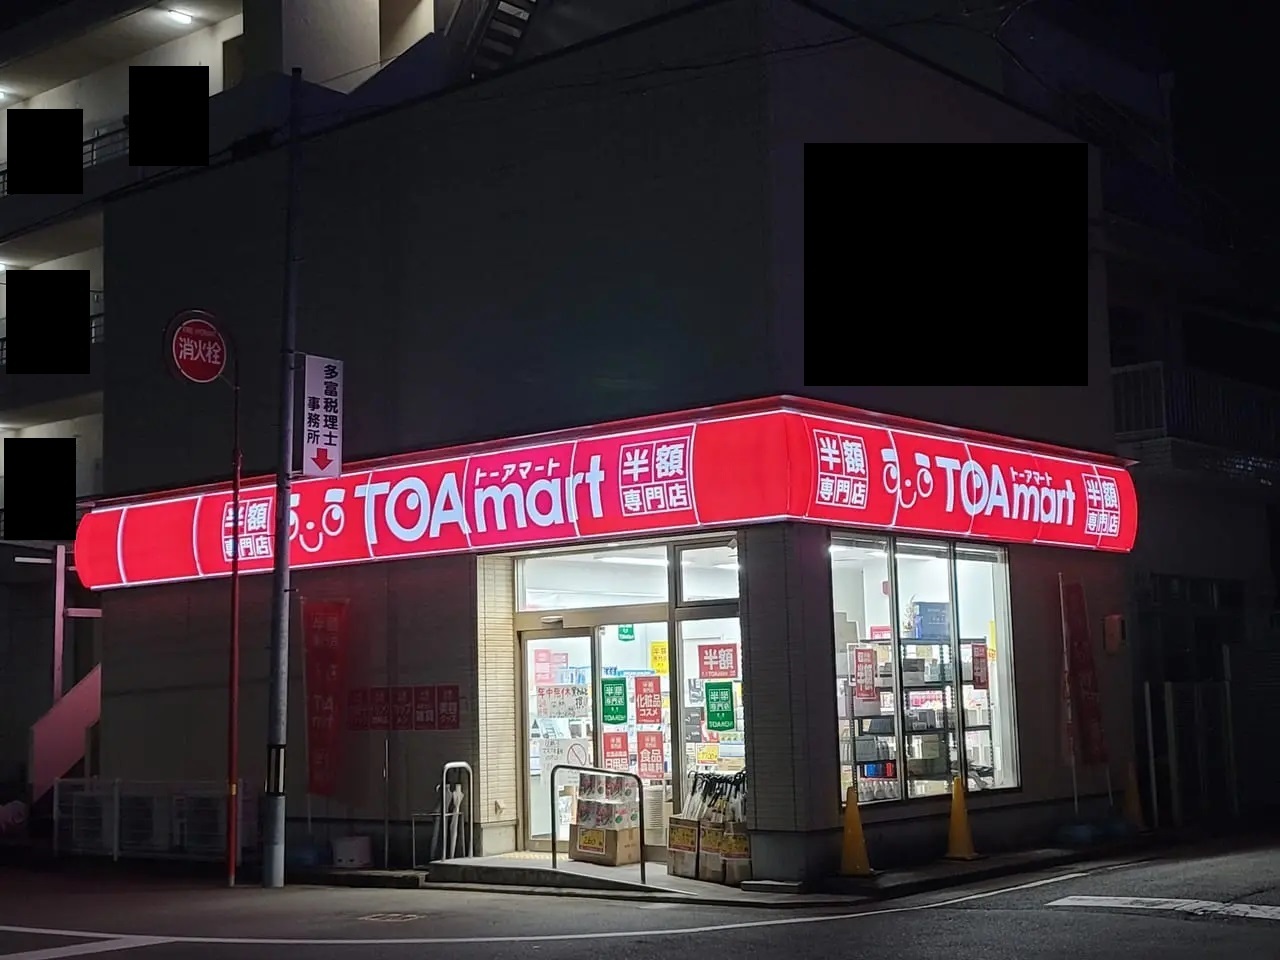 在庫状況により予定日より早く繰り上げ閉店した「TOAmart 徳島店」。